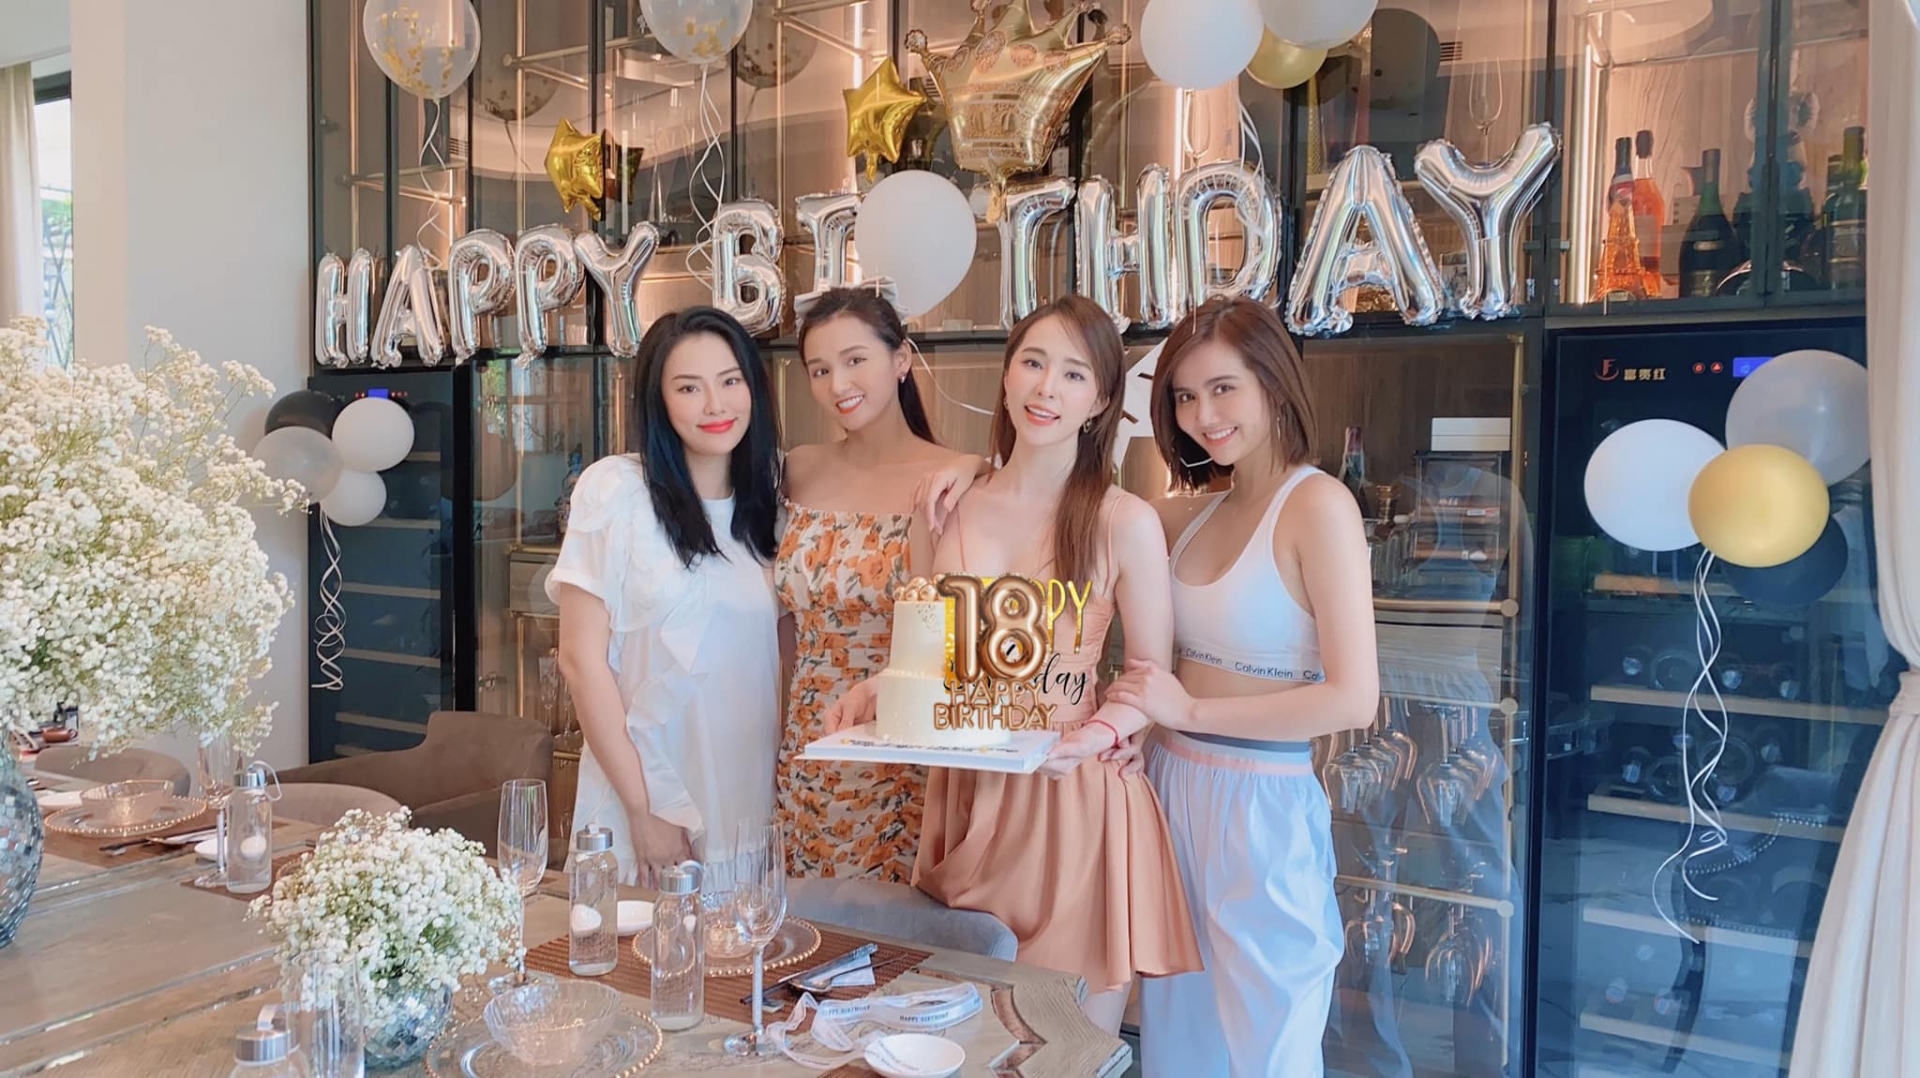 Quỳnh Nga - Việt Anh thân mật tổ chức chung tiệc sinh nhật.